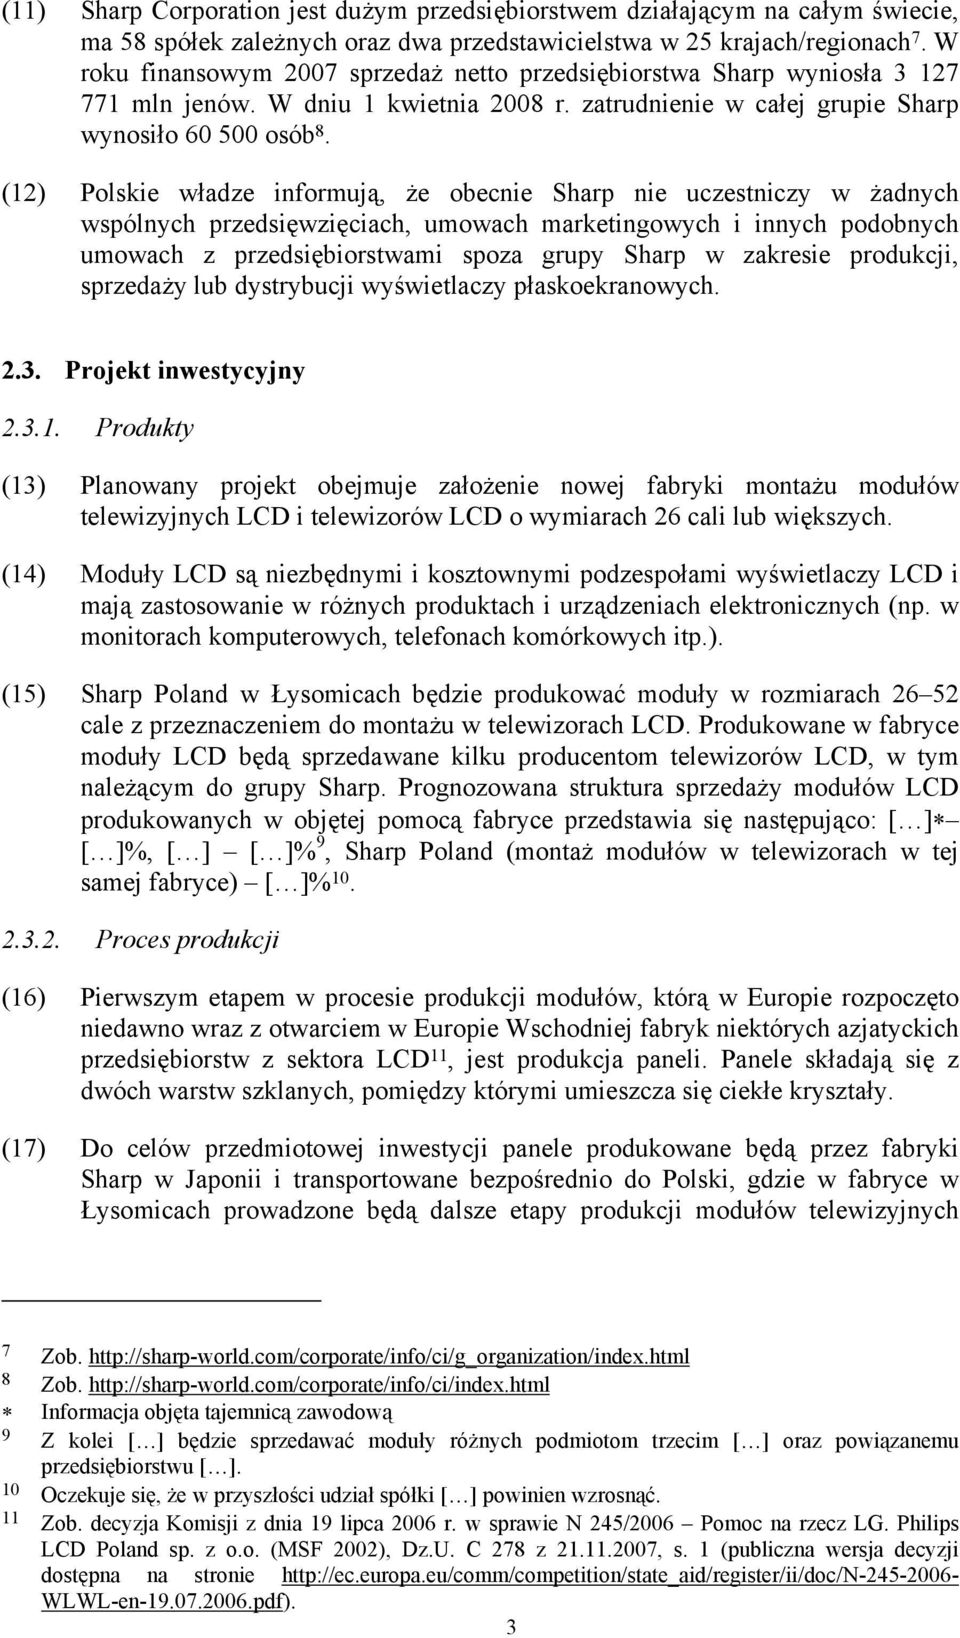 (12) Polskie władze informują, że obecnie Sharp nie uczestniczy w żadnych wspólnych przedsięwzięciach, umowach marketingowych i innych podobnych umowach z przedsiębiorstwami spoza grupy Sharp w